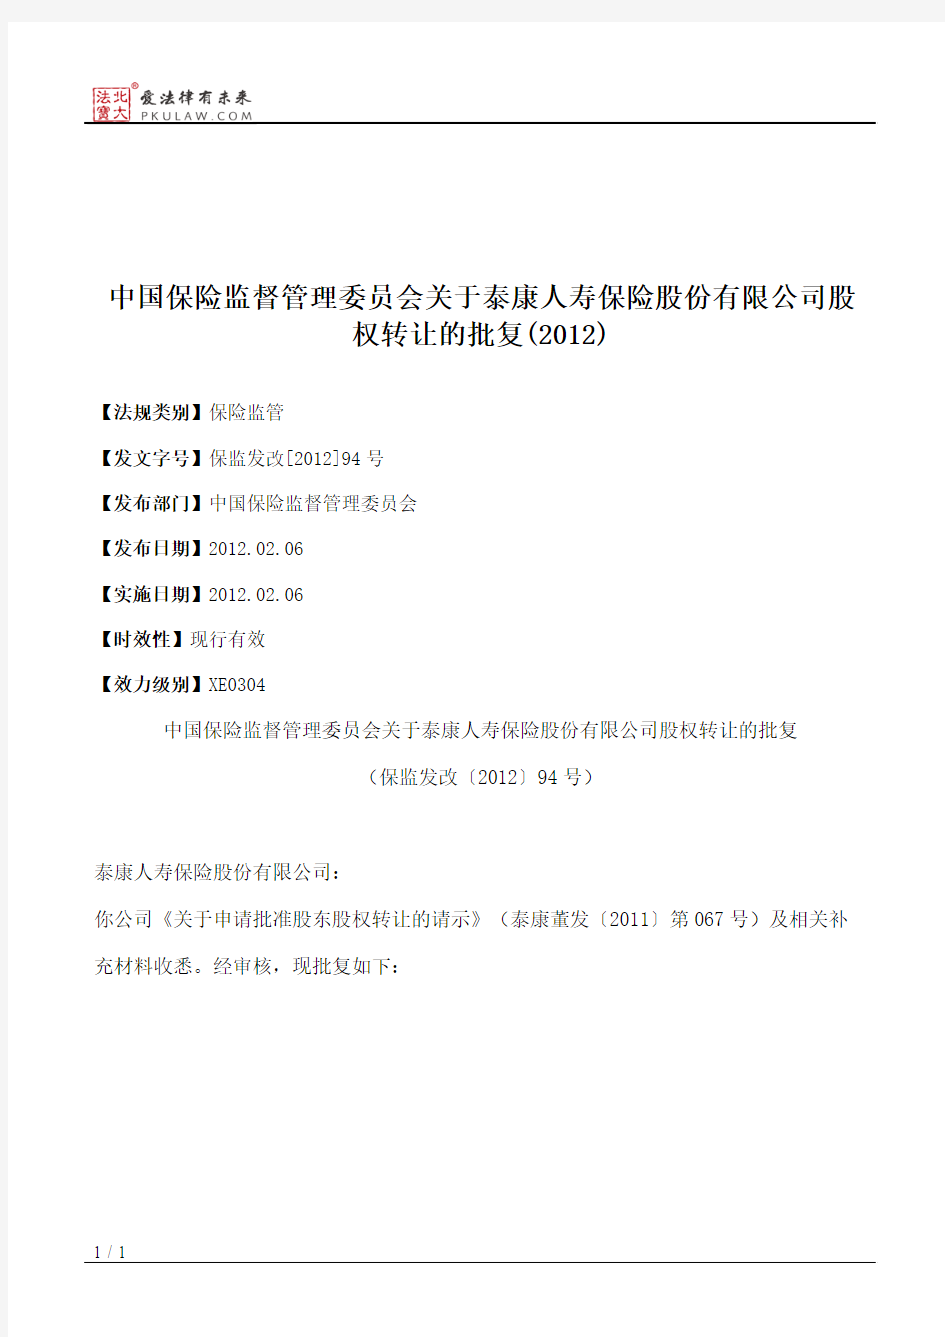 中国保险监督管理委员会关于泰康人寿保险股份有限公司股权转让的